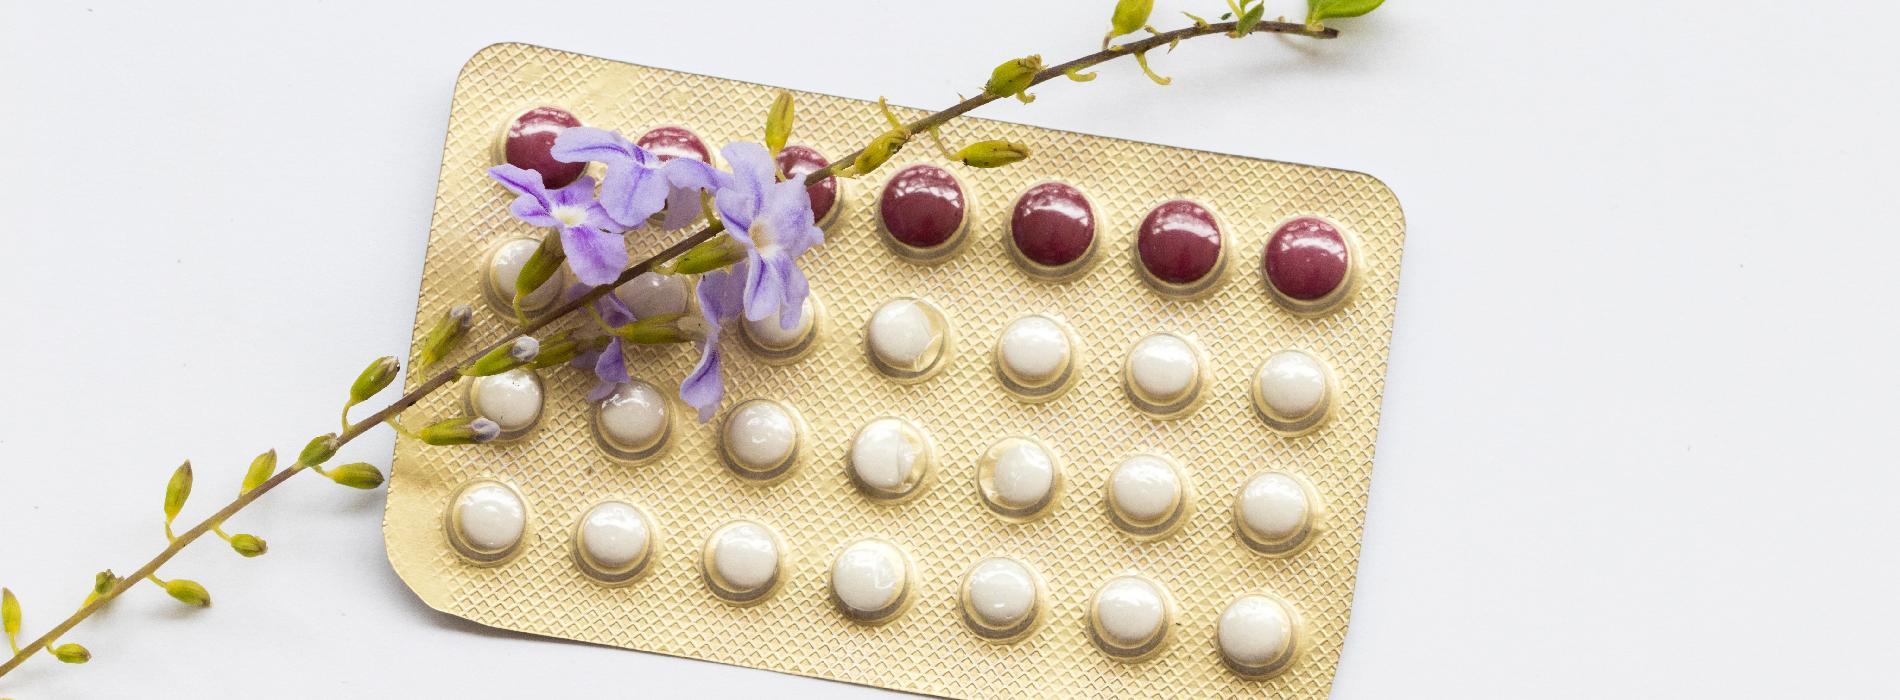 Antykoncepcja hormonalna a zakrzepica - ryzyka, czynniki genetyczne i diagnostyka